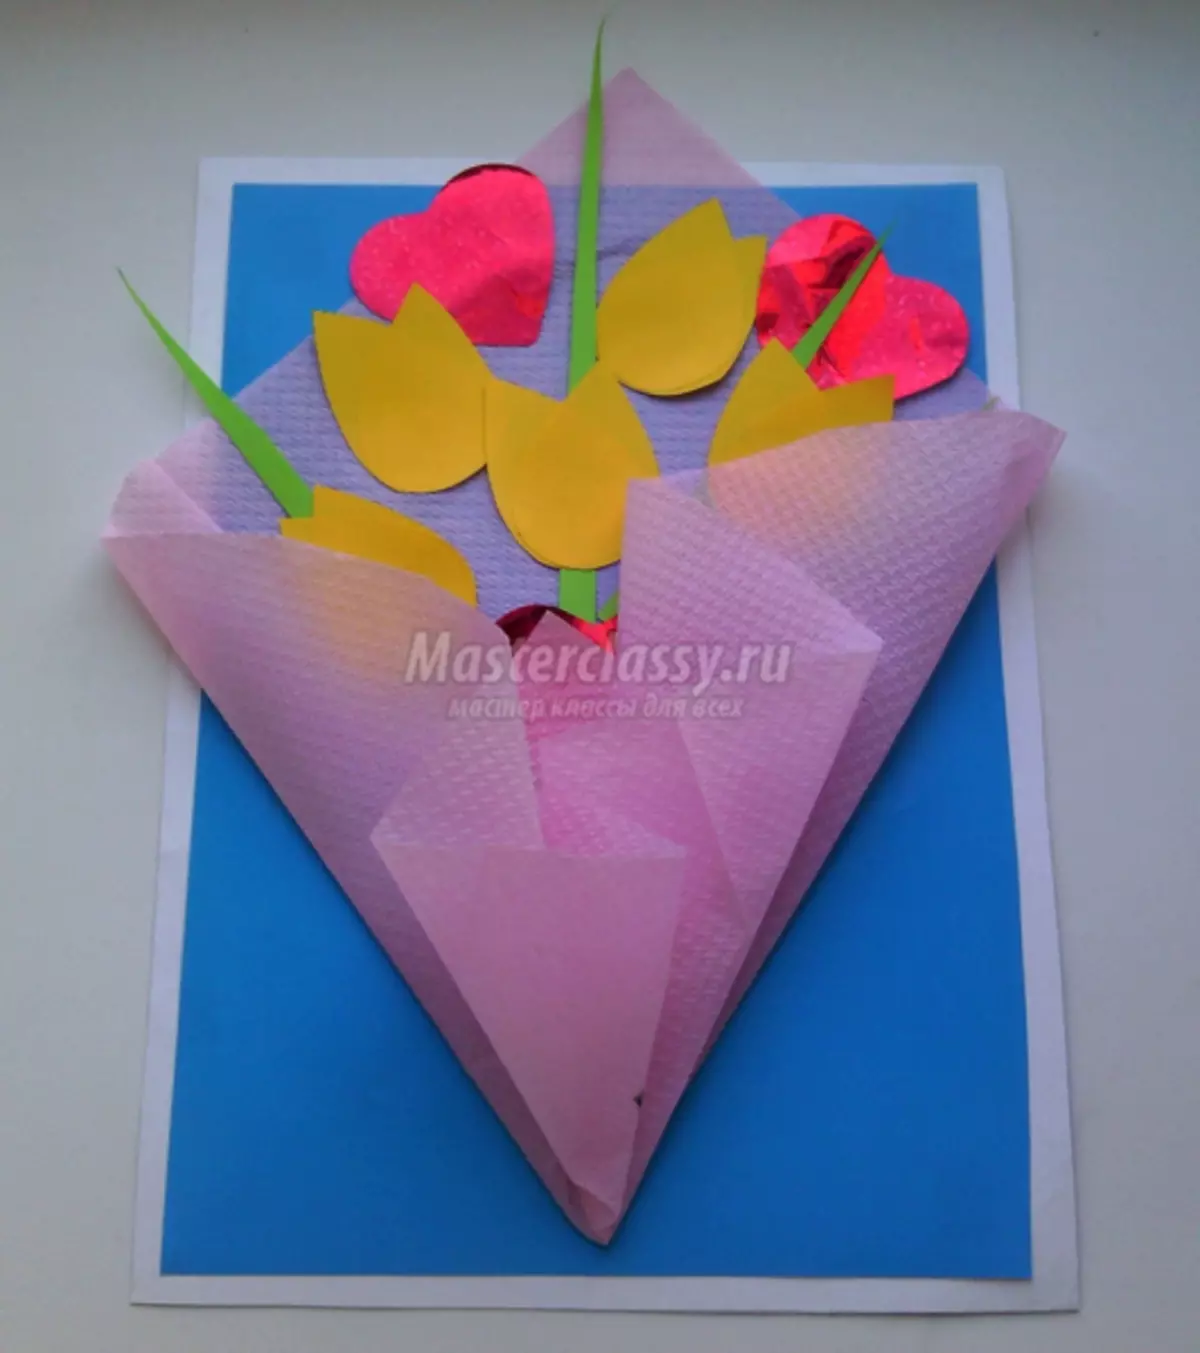 3 월 8 일까지 꽃이있는 벌크 종이 카드를 만드는 방법